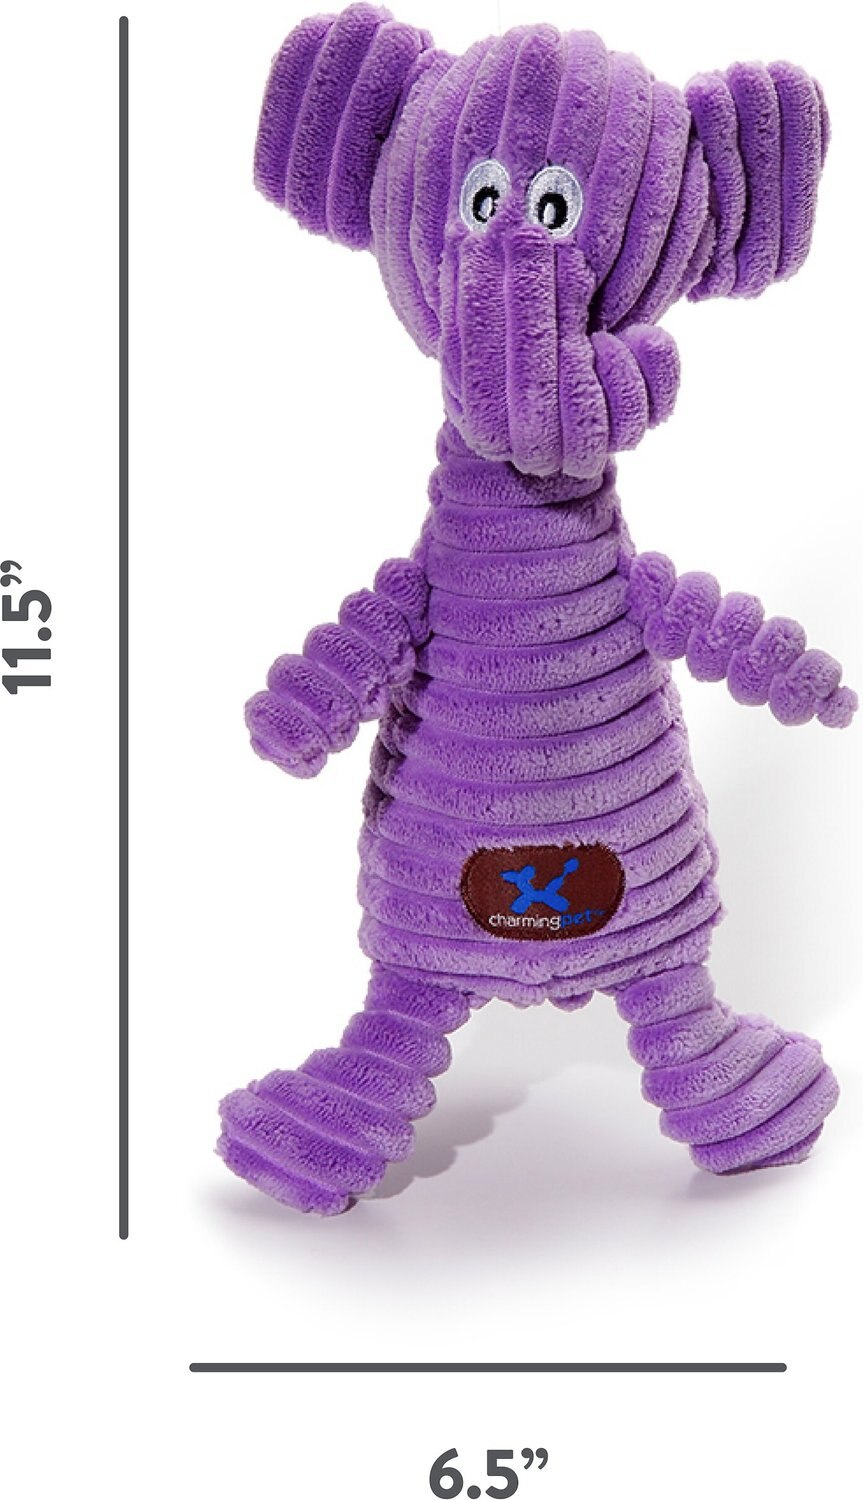 stuffed purple elephant